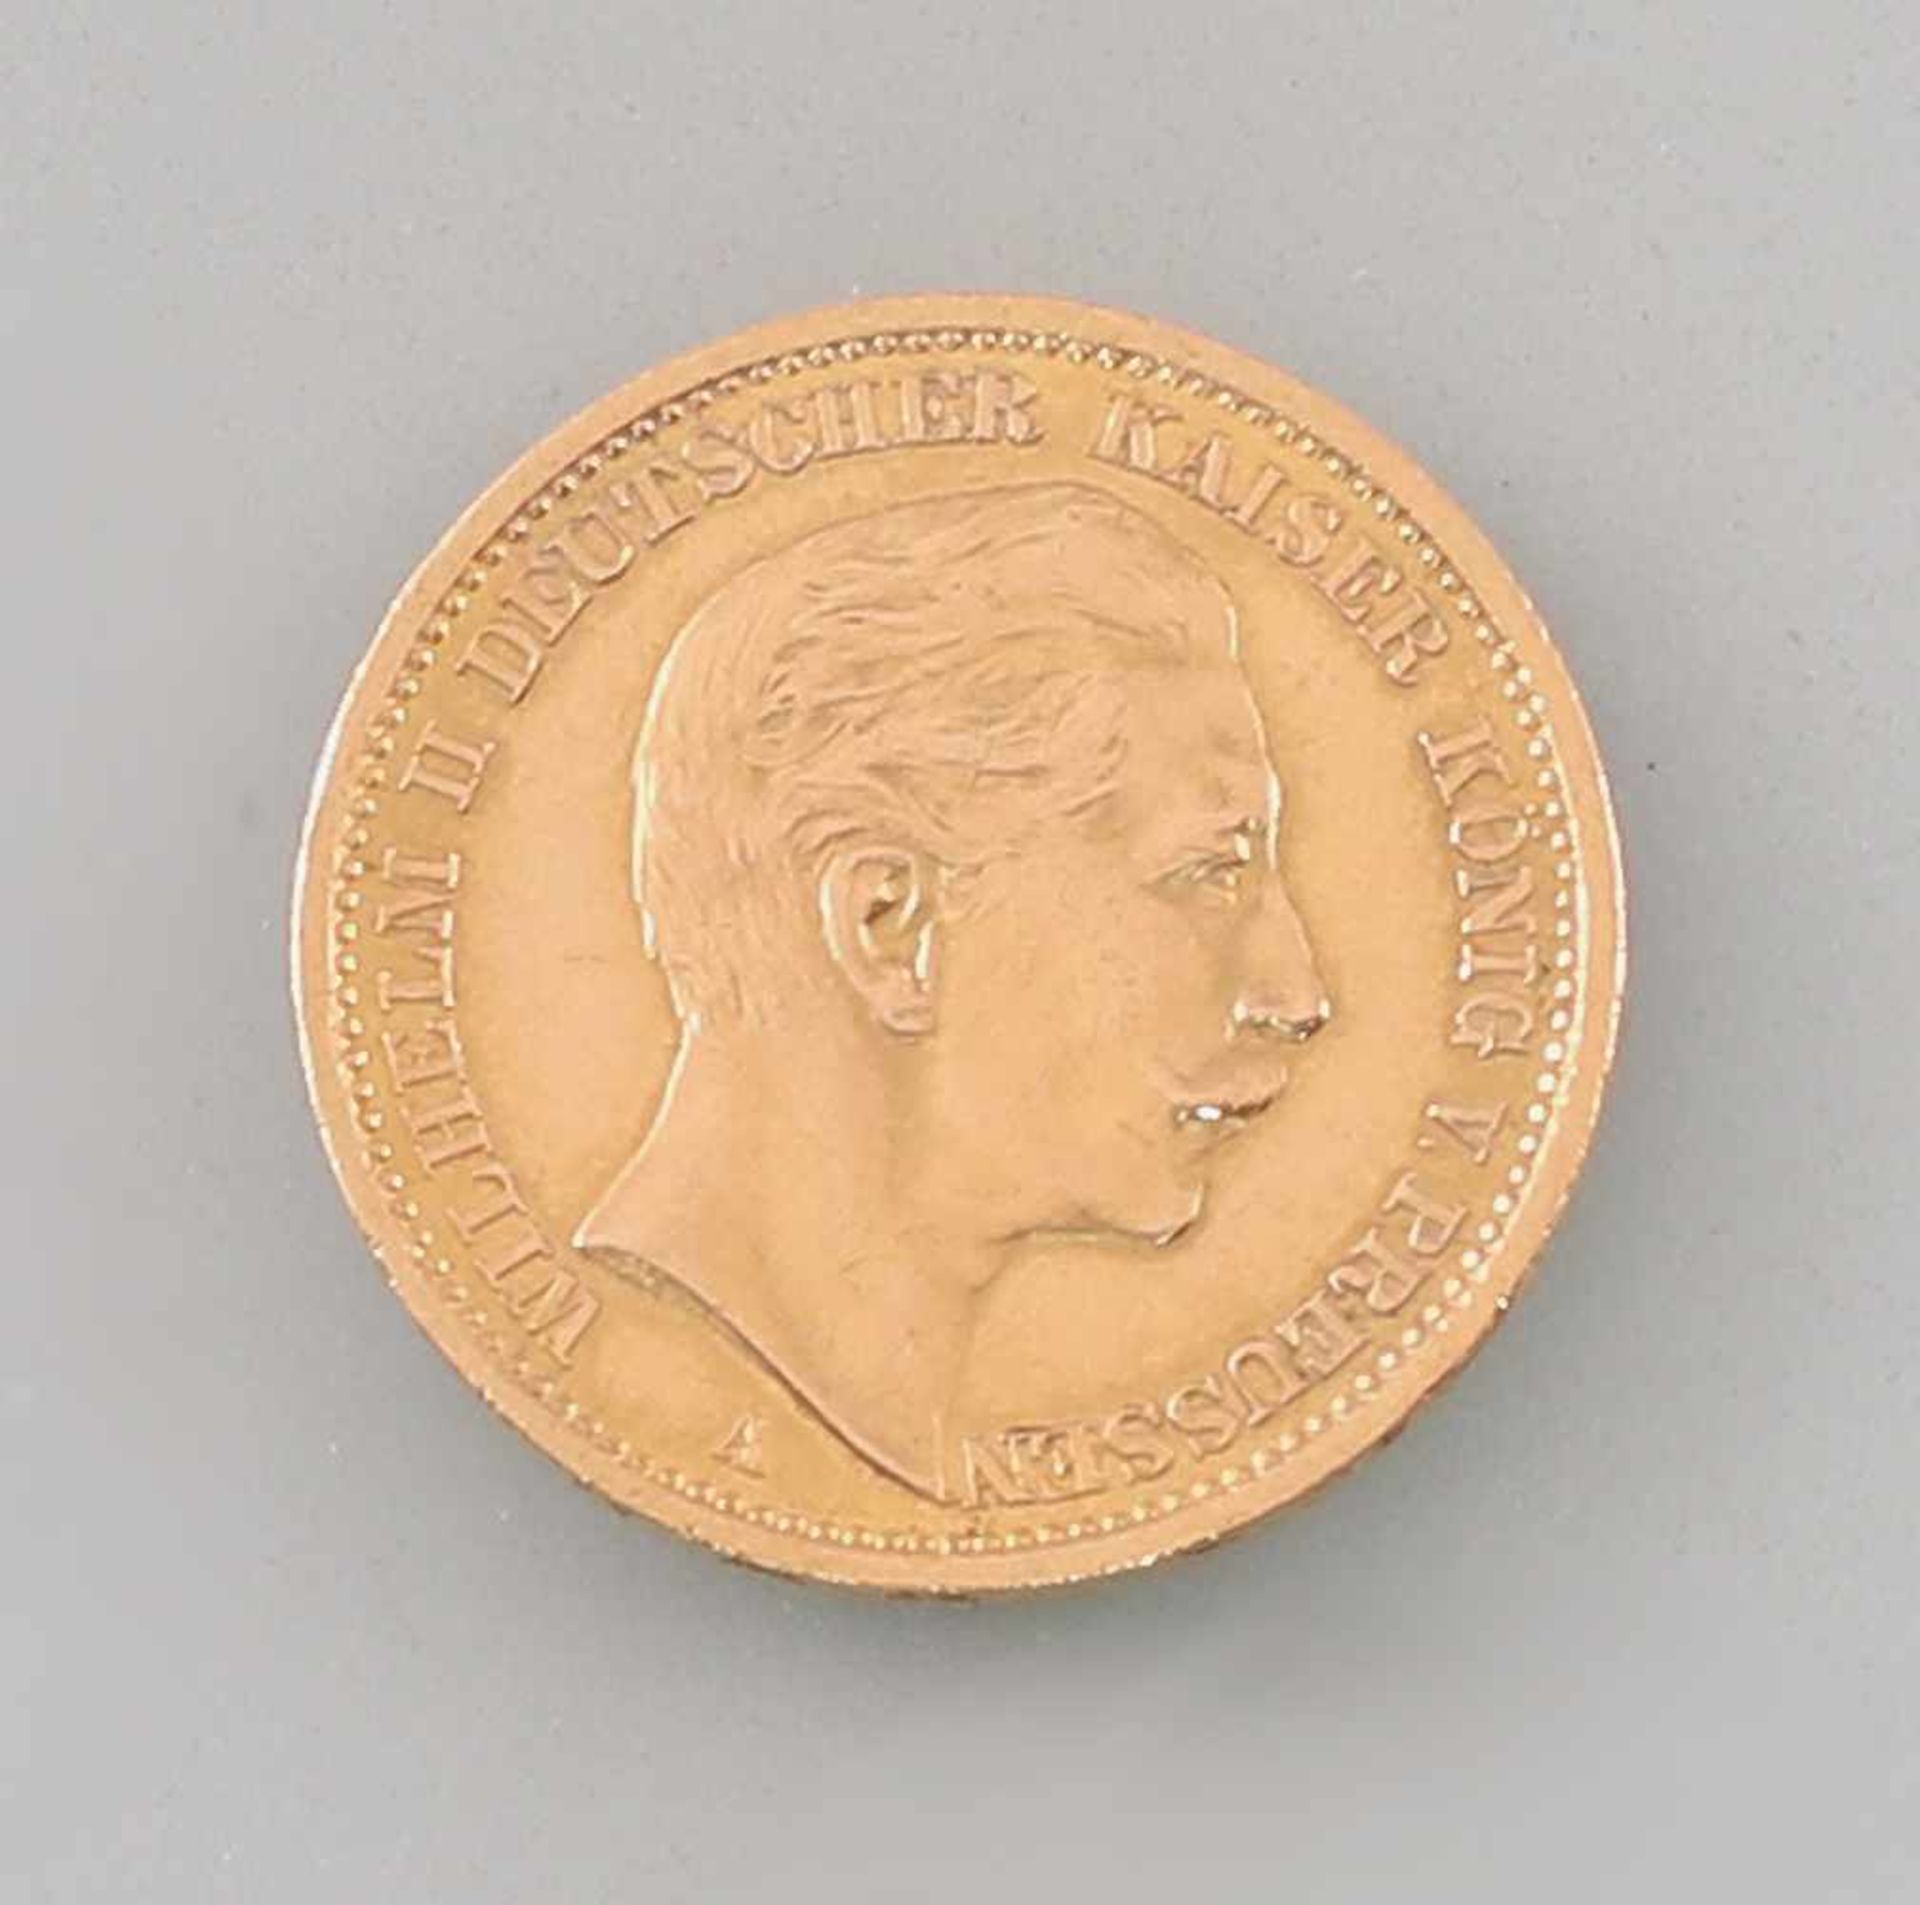 Goldmünze 20 Mark Deutsches Reich Preussen 1908900er Gold, 7,86 g, D 22,5 mm, 20 Mark Deutsches